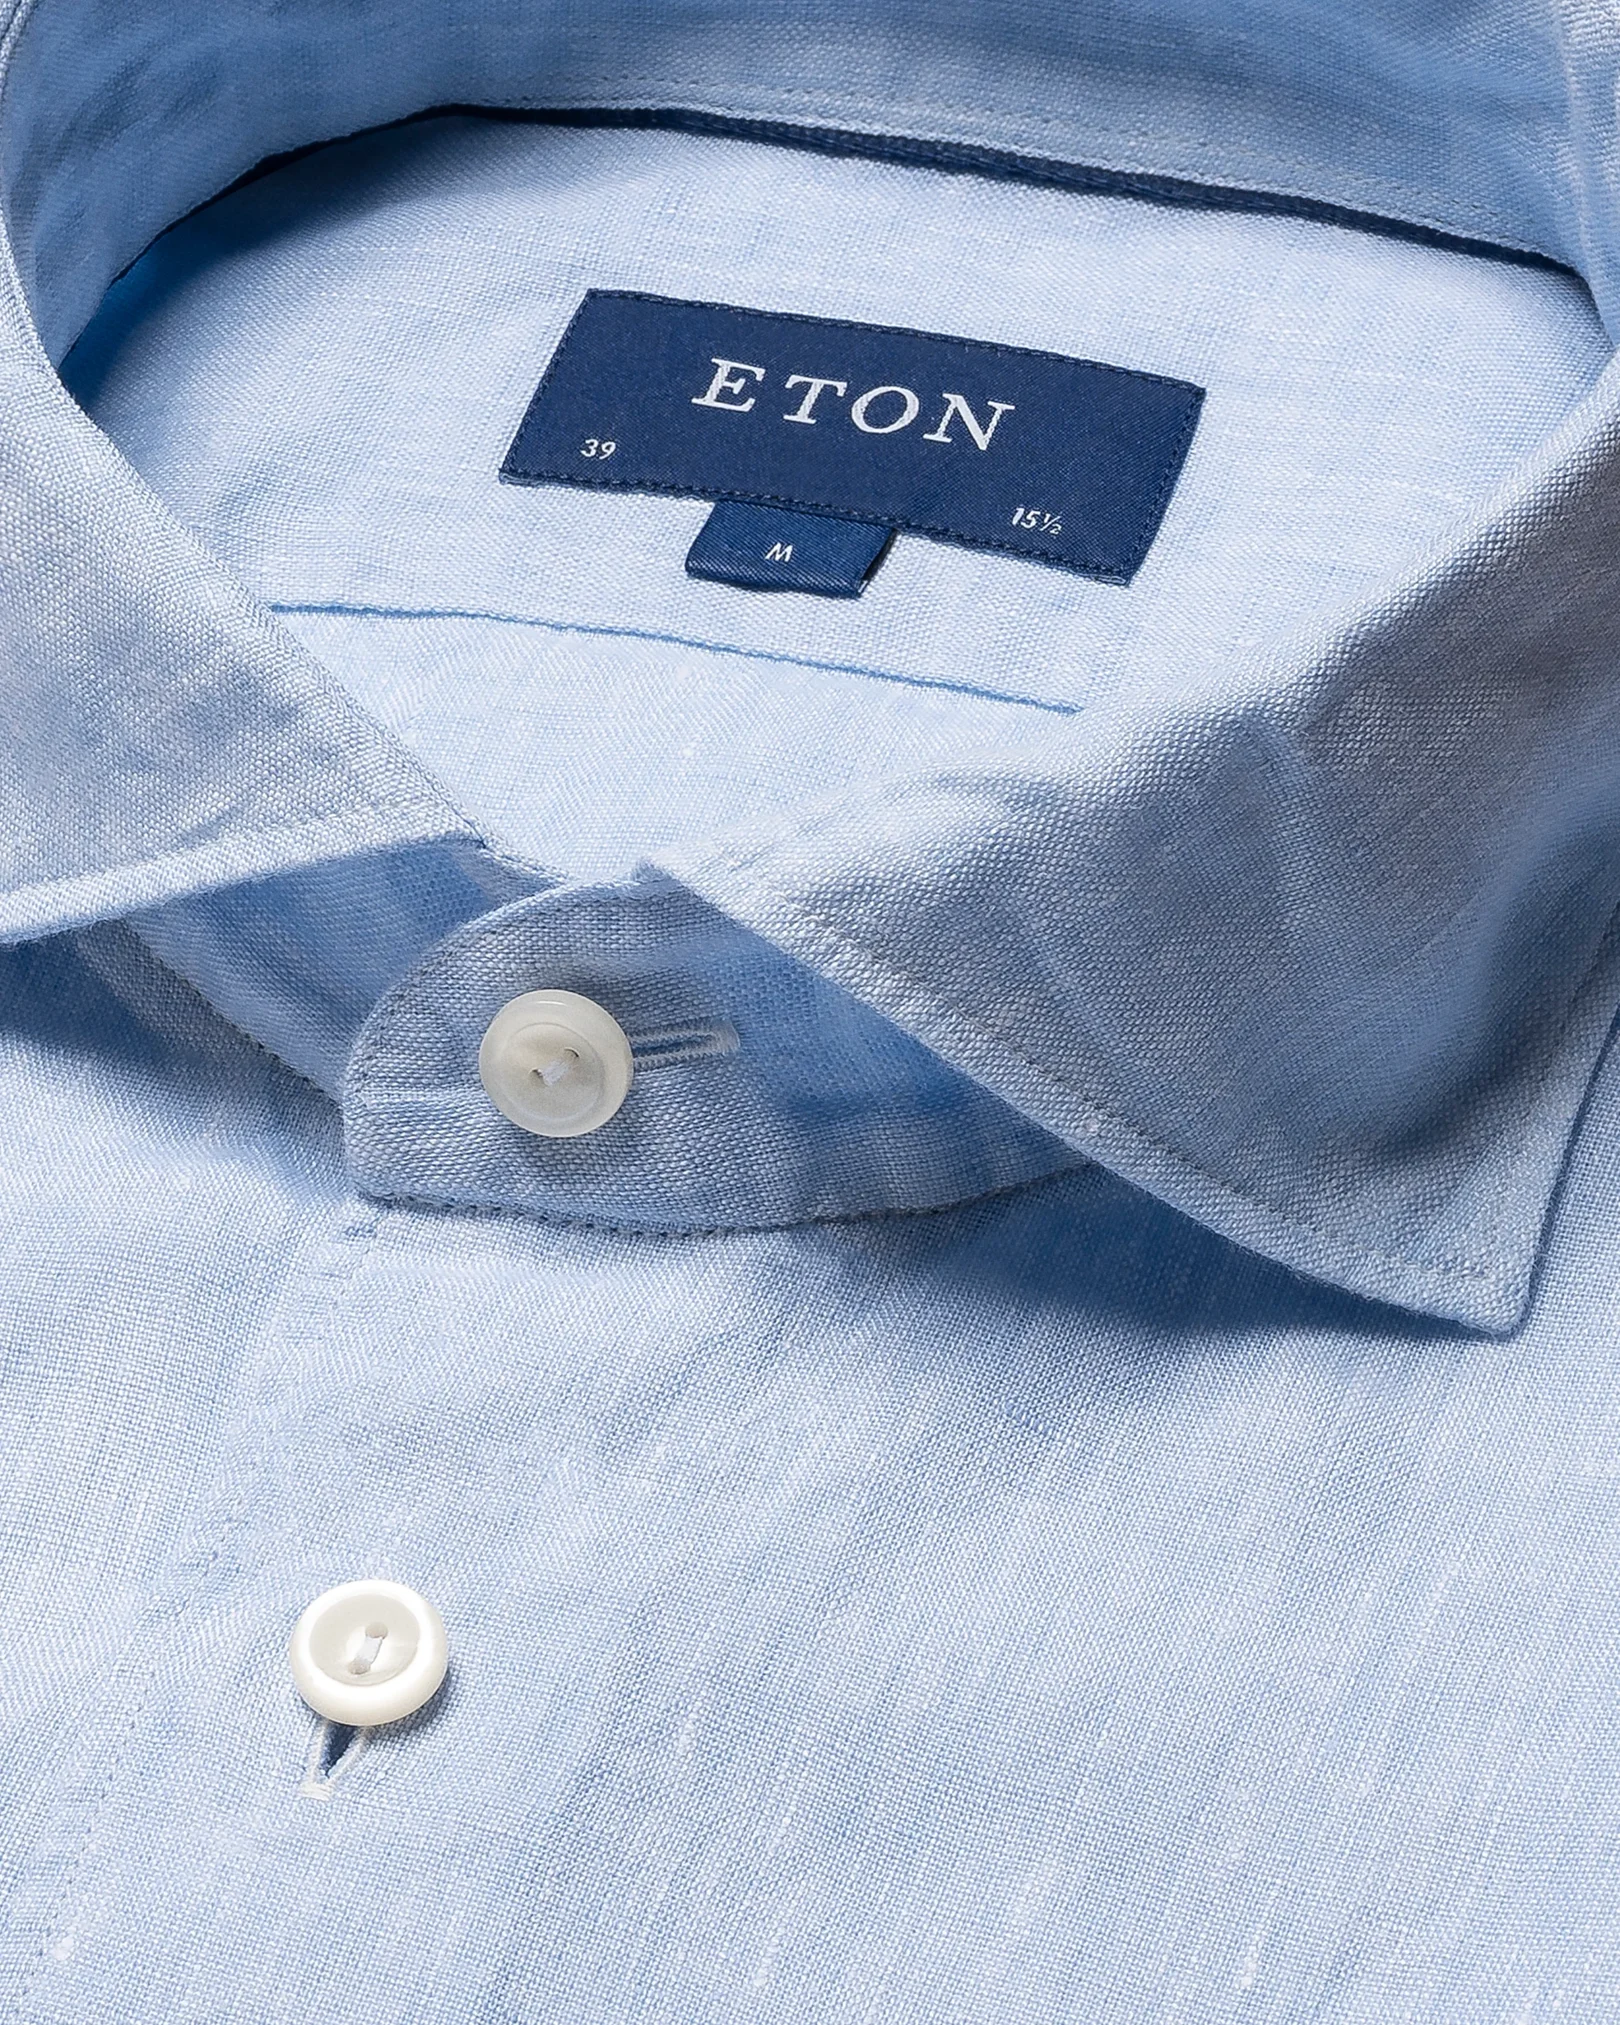 Eton - light blue linen button down